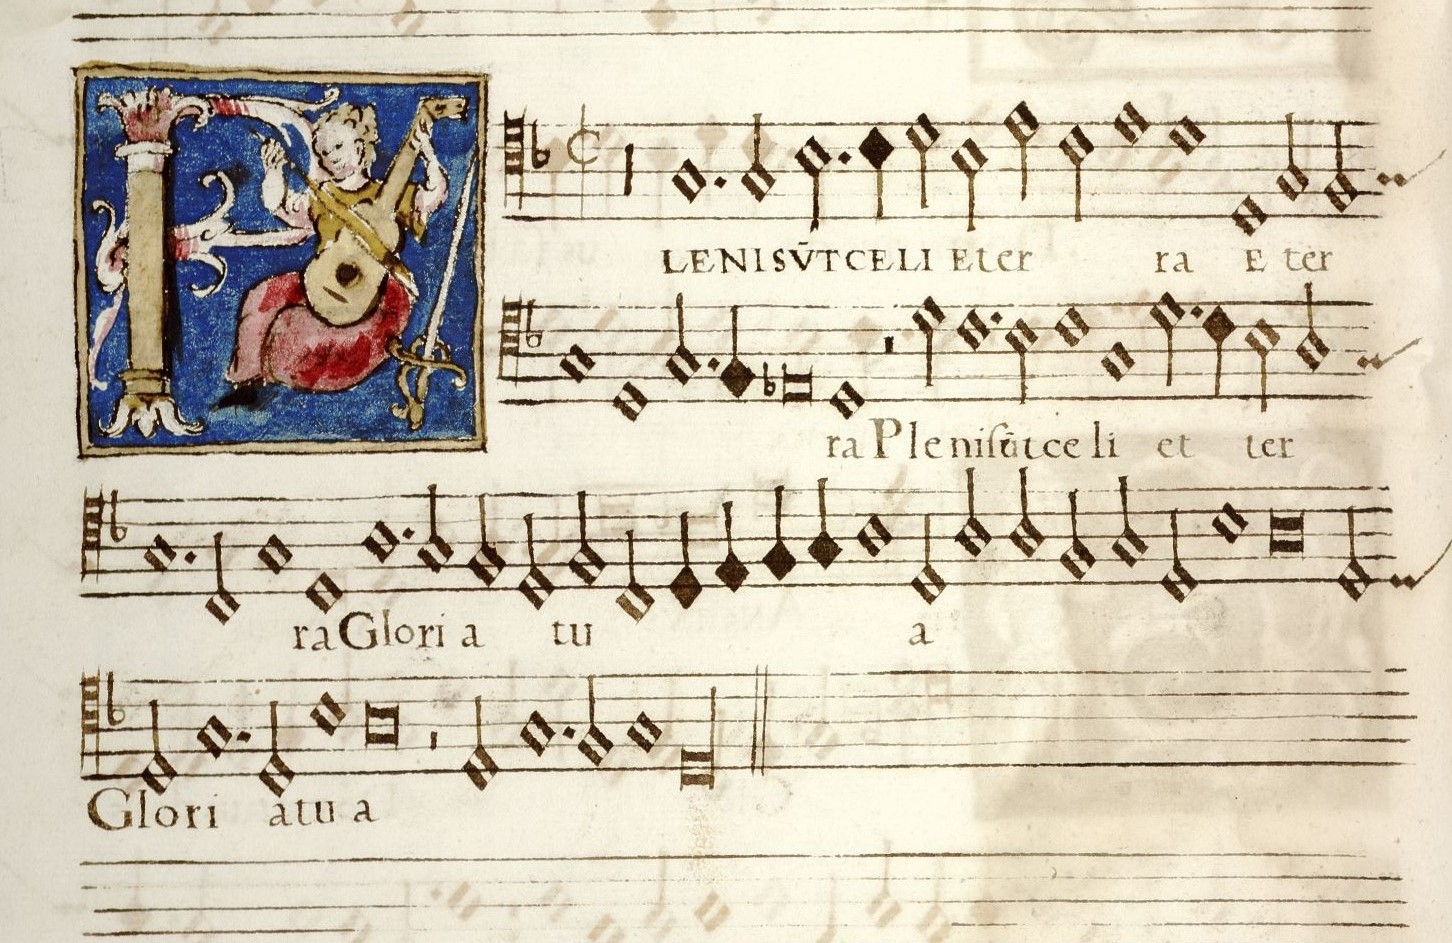  Missa voce mea cun sex vocibus. ca. 1594 